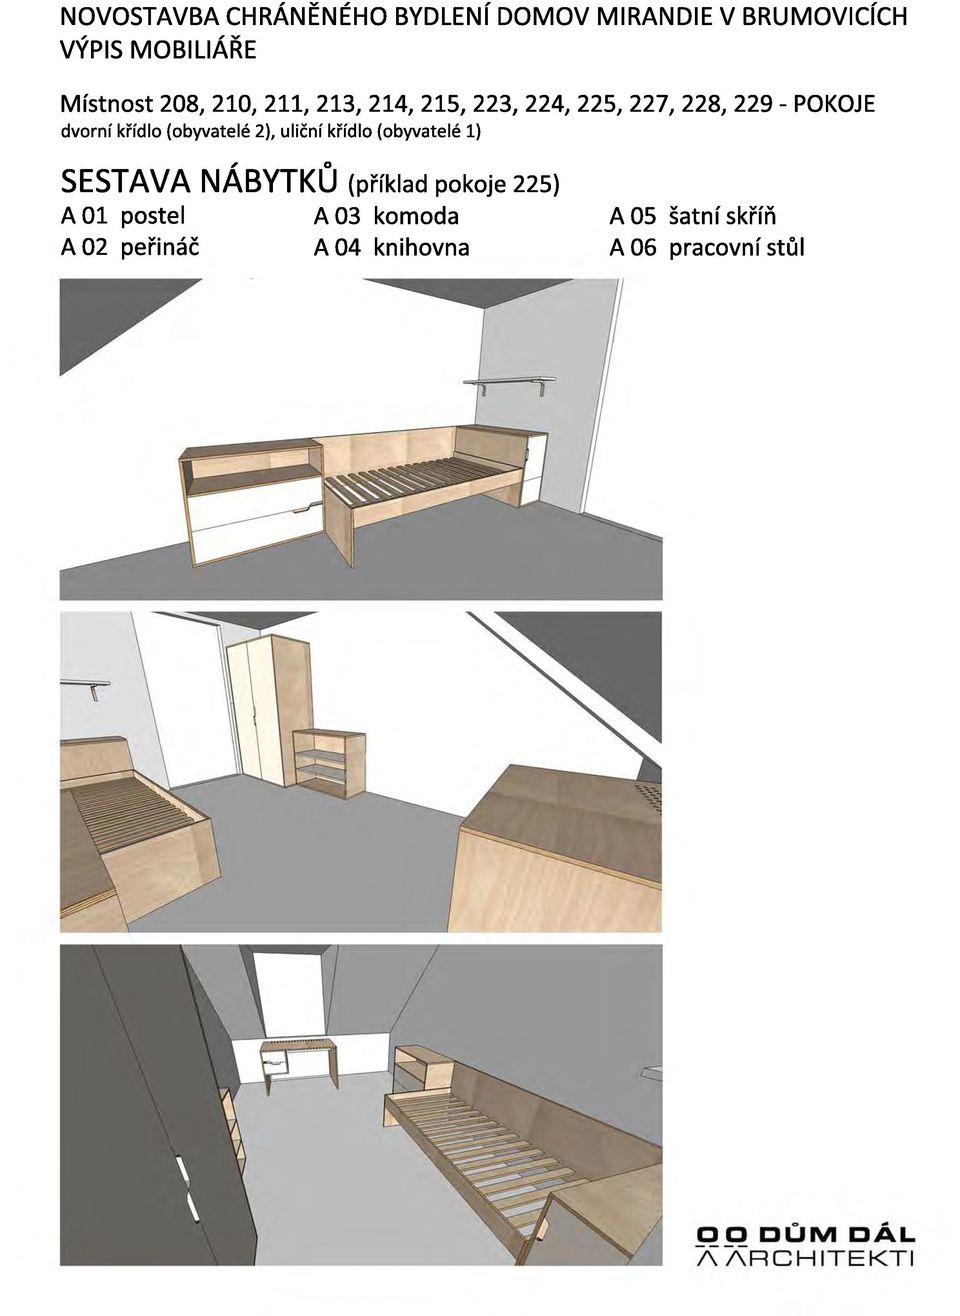 SESTAVA NABYTKU (příklad pokoje 22s) A 01 postel A 03 komoda A 05 šatní